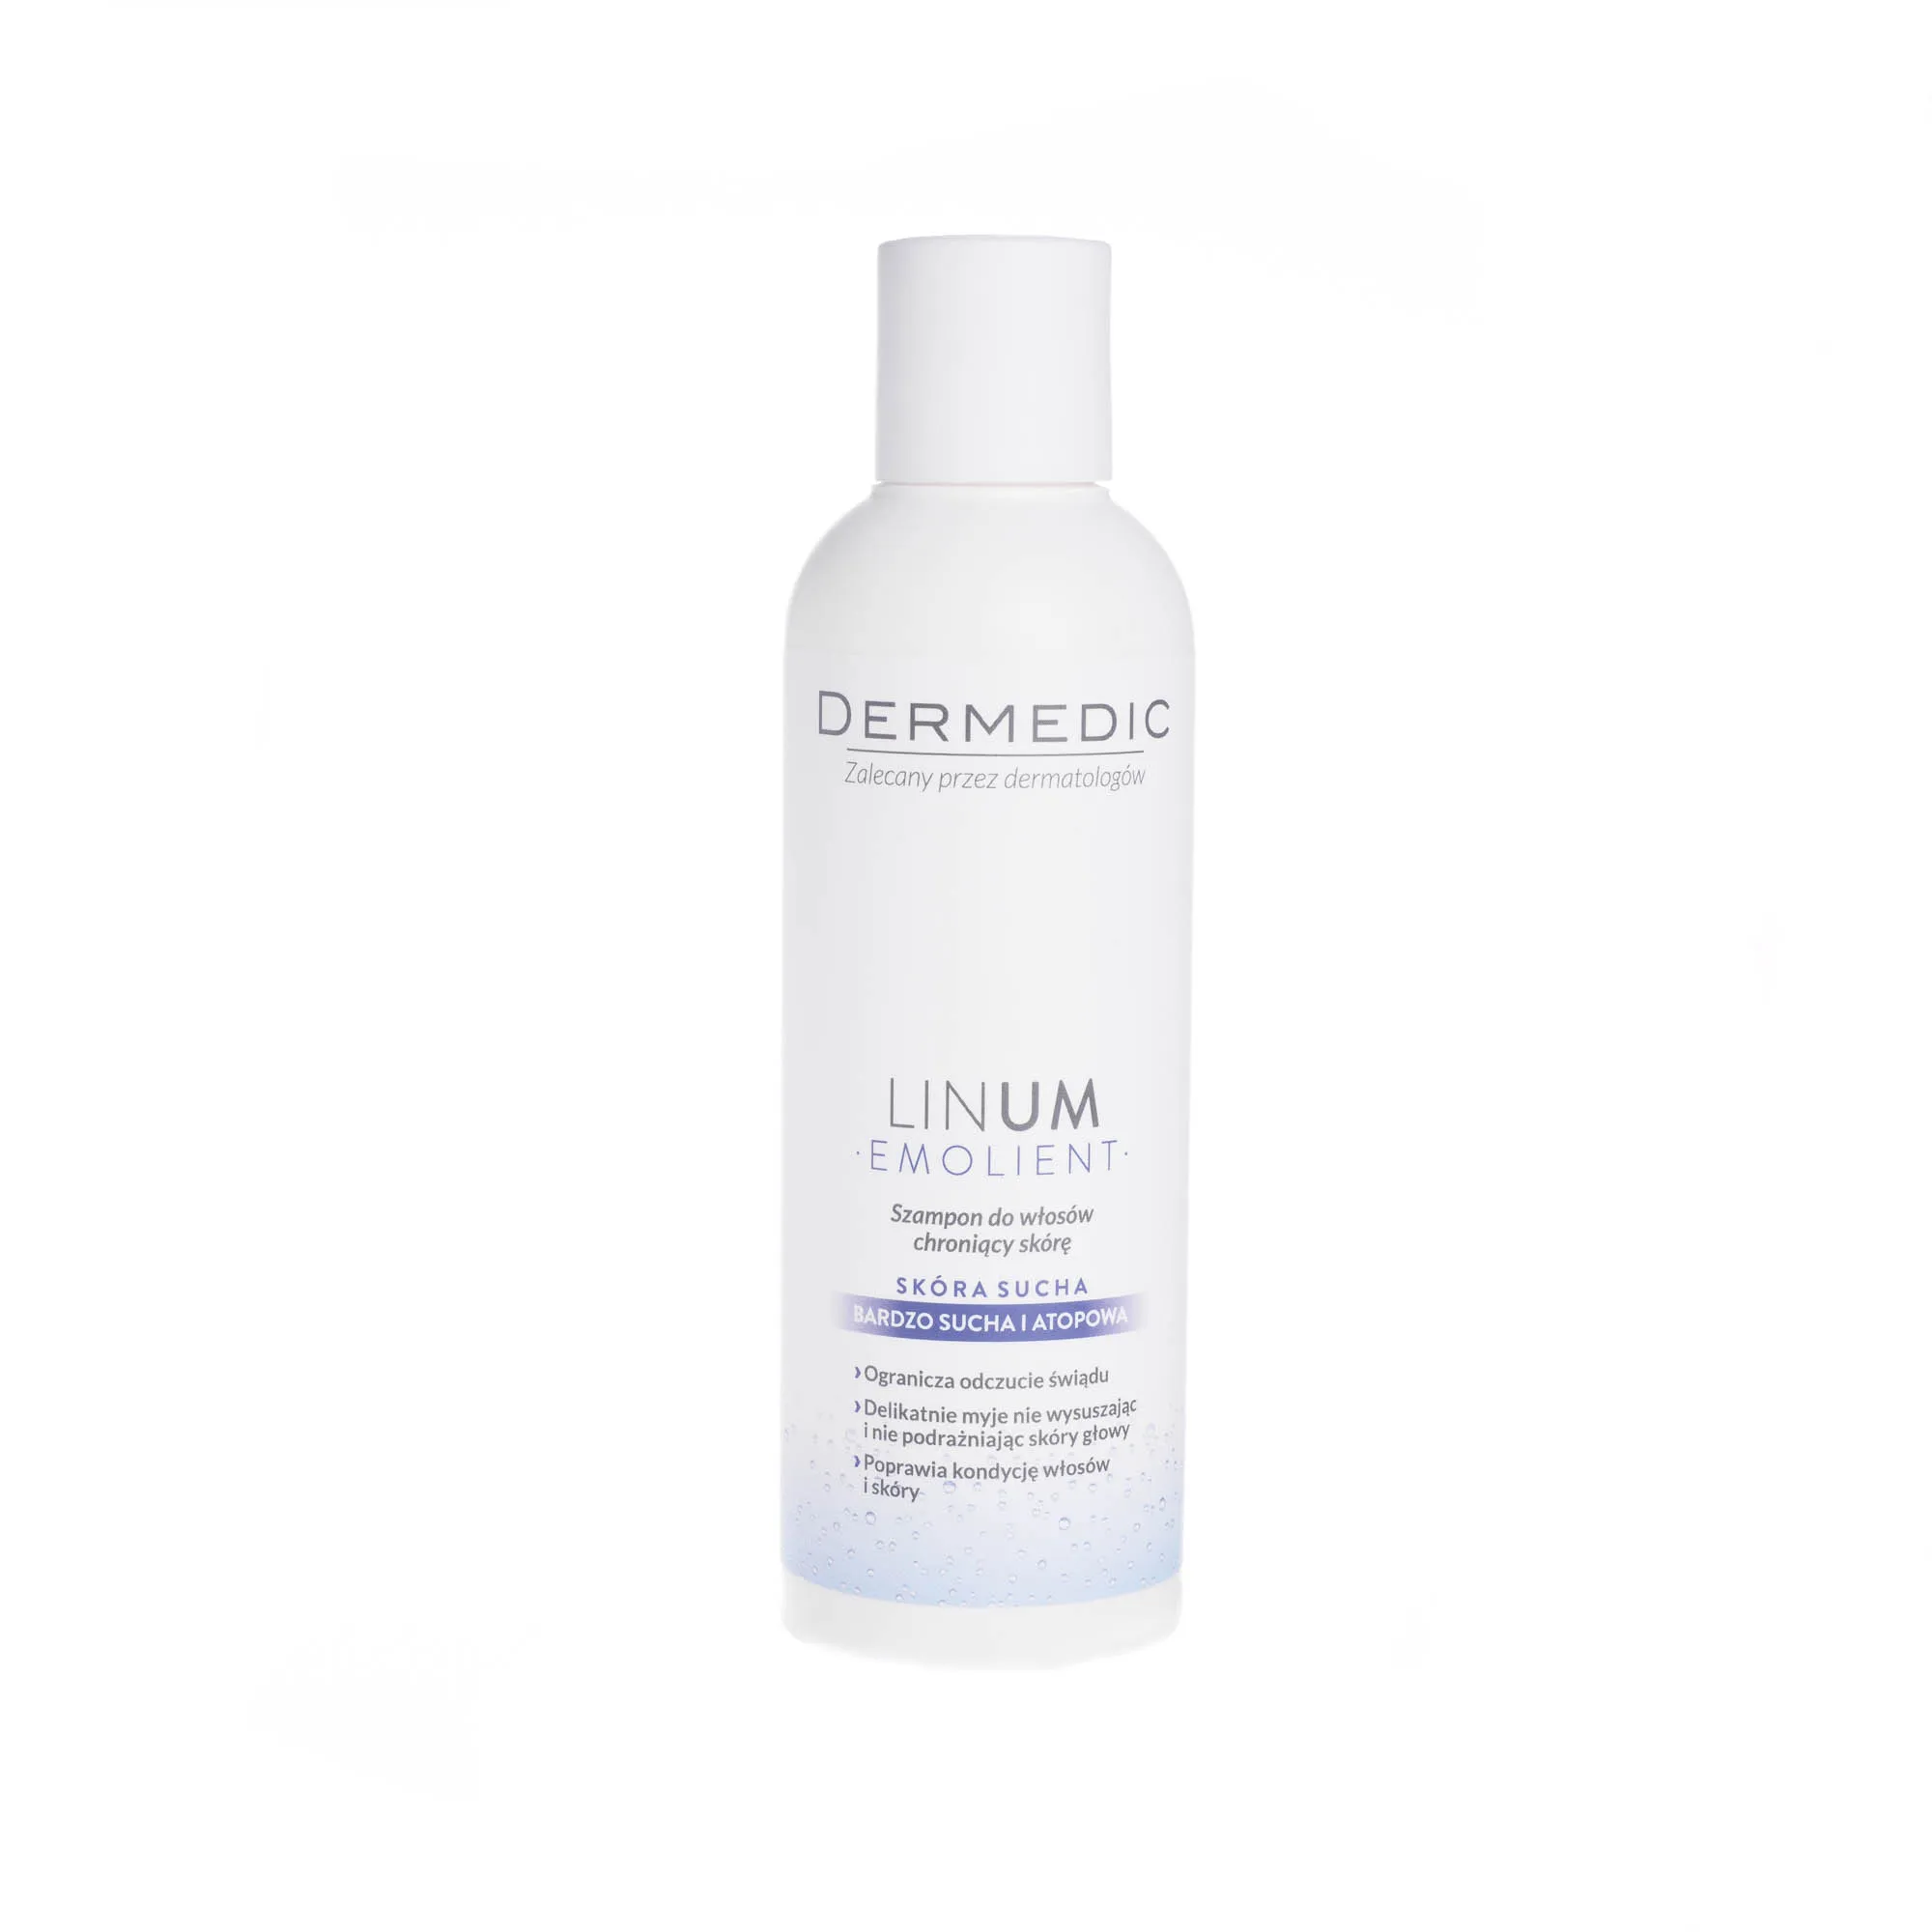 dermedic linum szampon do włosów chroniący skórę atopową opinie